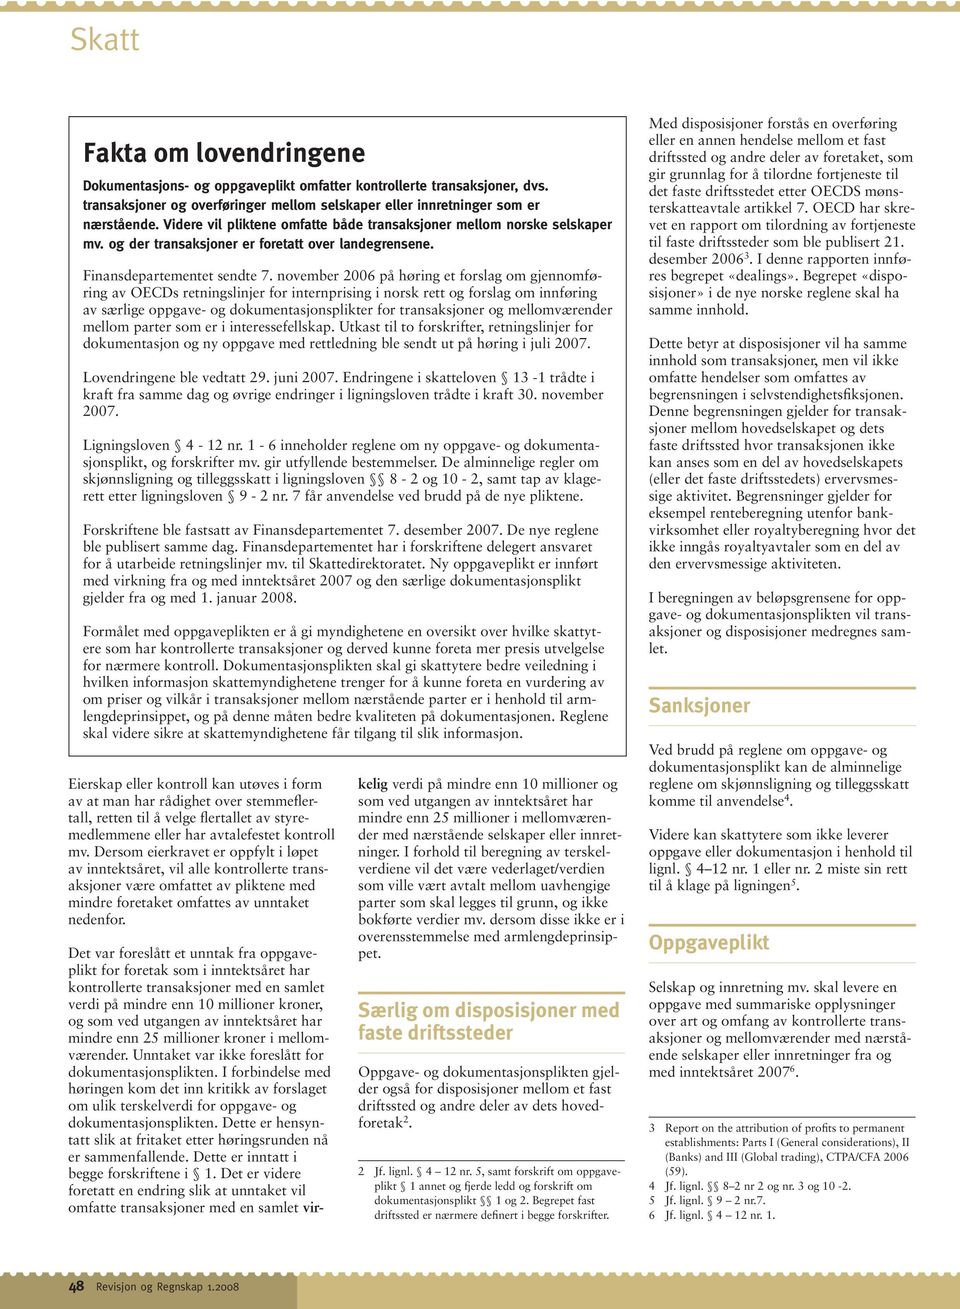 november 2006 på høring et forslag om gjennomføring av OECDs retningslinjer for internprising i norsk rett og forslag om innføring av særlige oppgave- og dokumentasjonsplikter for transaksjoner og